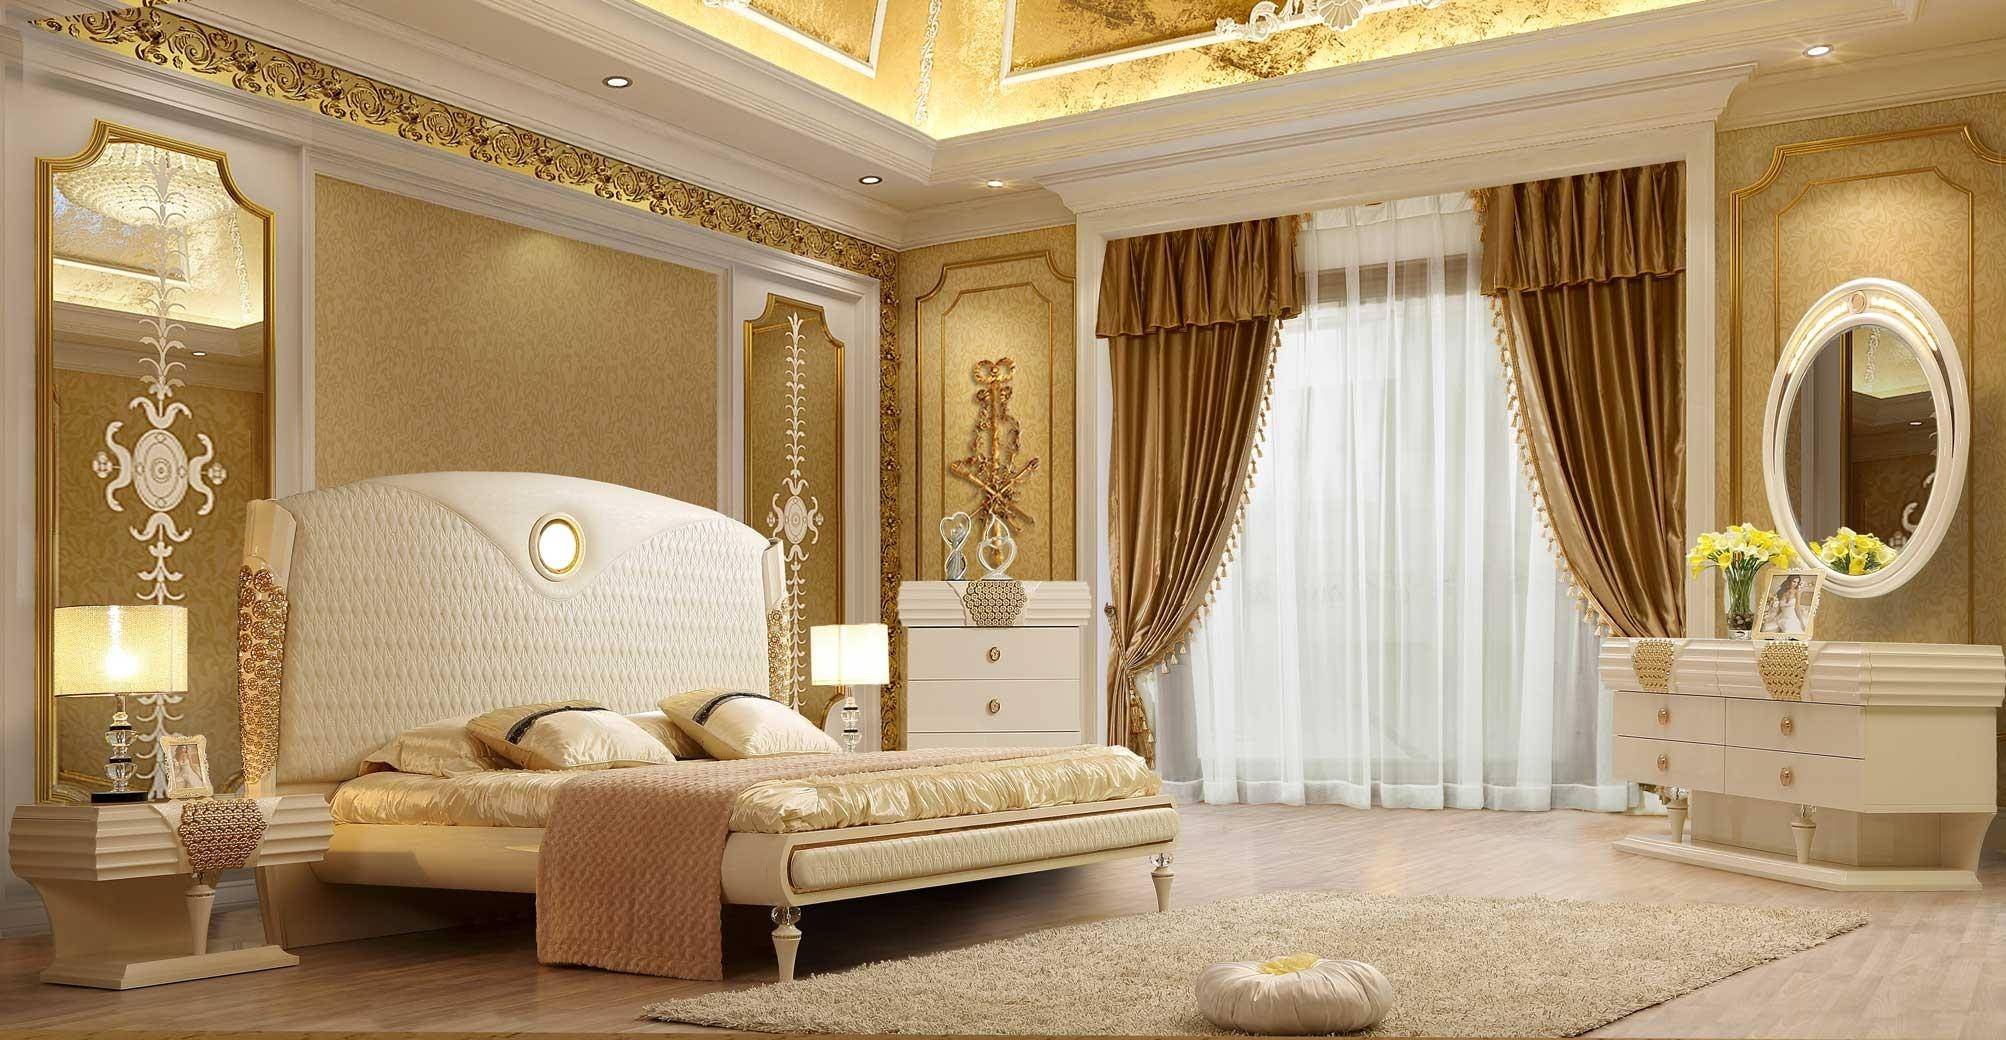 Hd 901 King Sleigh Bedroom Set, Luxury King Bedroom Furniture